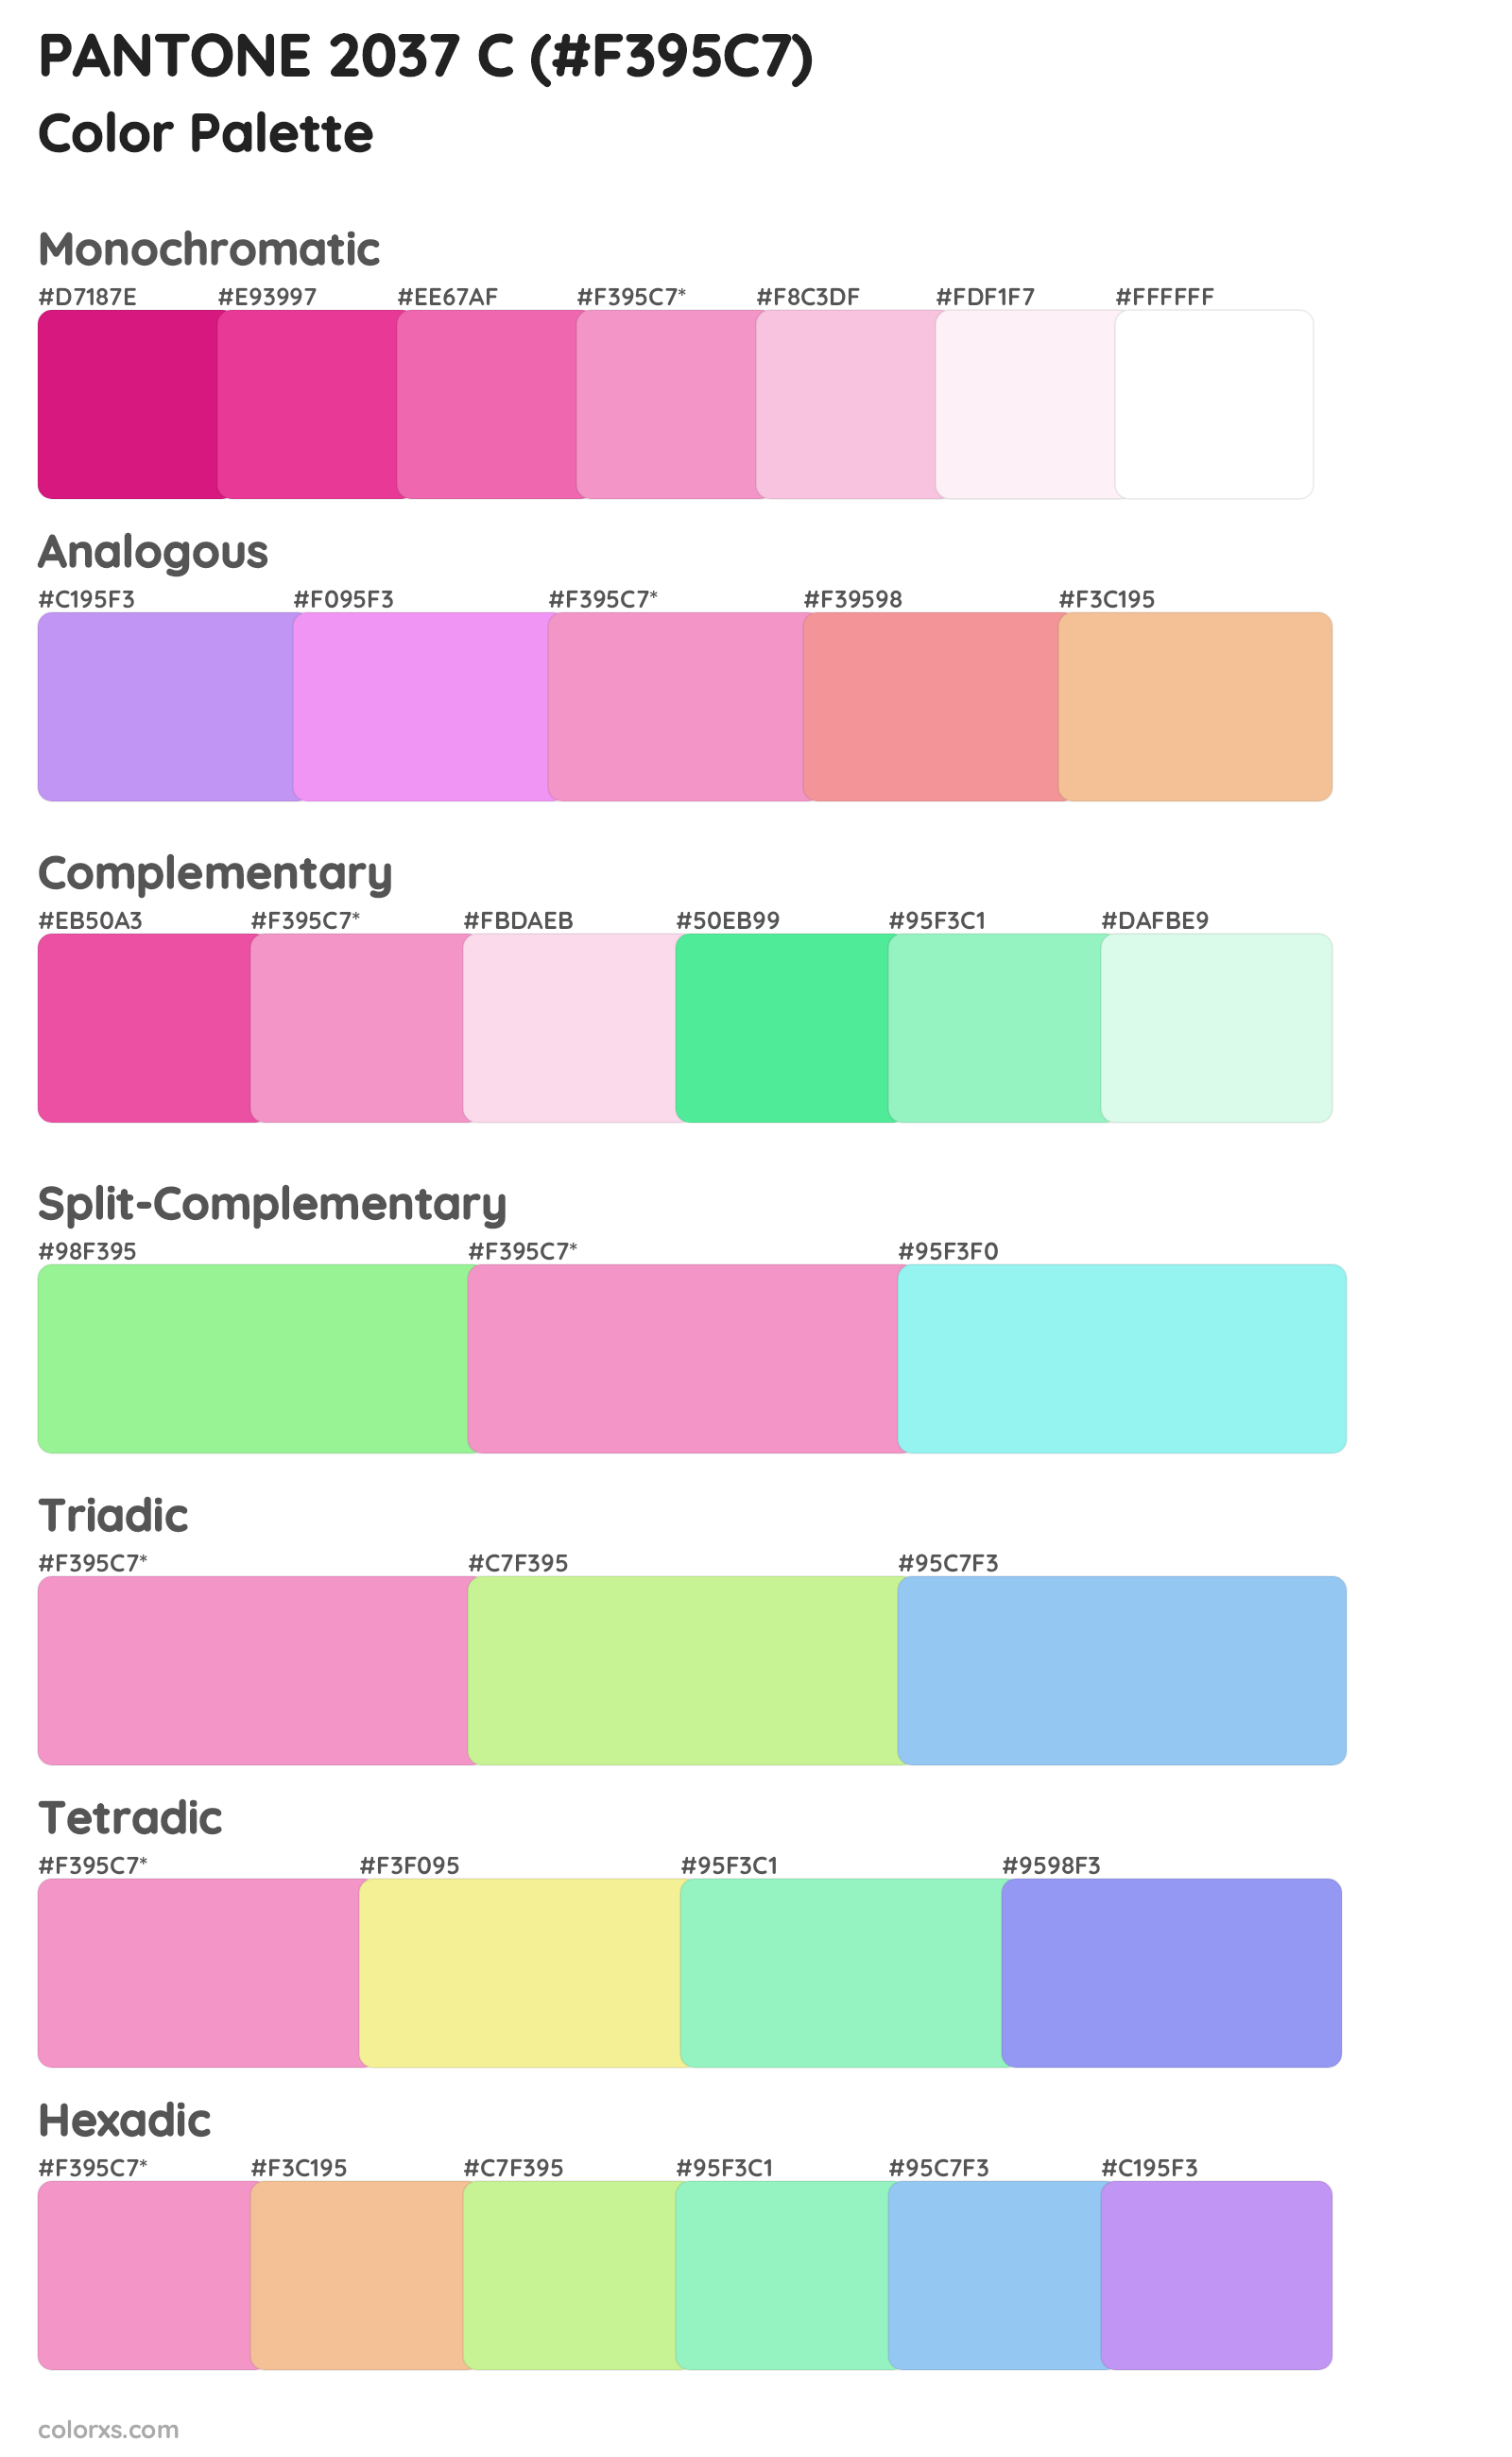 PANTONE 2037 C Color Scheme Palettes